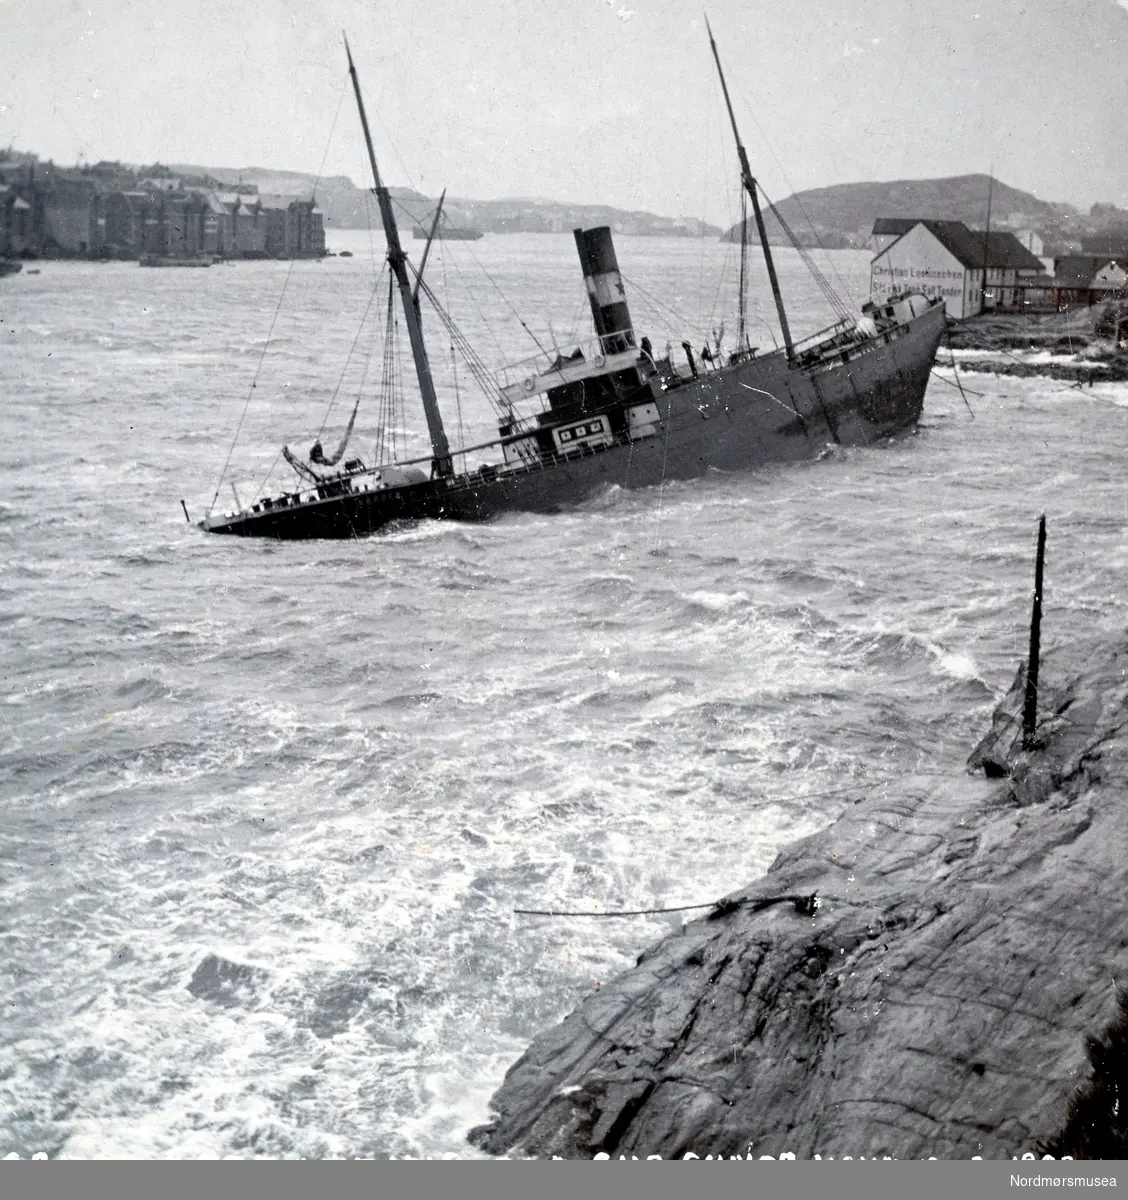 S/S Nordens stranding ved Chr Loennechens brygge i Sørsundet 12. februr 1903. Det var storm- og strømforhold som var årsaken til at den ikke fikk legge til kaien.  "Norden" som kom til Kristiansund med en saltlast, losset restpartiet på Hammervoldbrygga i Sørsundet. Ved avgangen var det stormbyger fra Nordvest så skipet greide ikke å avansere men drev ned mot sørspissen av Innlandet. Rutebåten "Nordmøre" forsøkte å assistere, men greide det ikke. "Norden" gikk på grunn med akterenden på Lervikskjæret på Innandet, og sank. Den ble provisorisk tettet og flyttet til Hønebukta, derifra til Trondheim og videre til Bergen. Dens senere skjebne er ukjendt. Fotograf er her trolig Ole Olsen Ranheimsæter. Fra Nordmøre museums fotosamlinger.